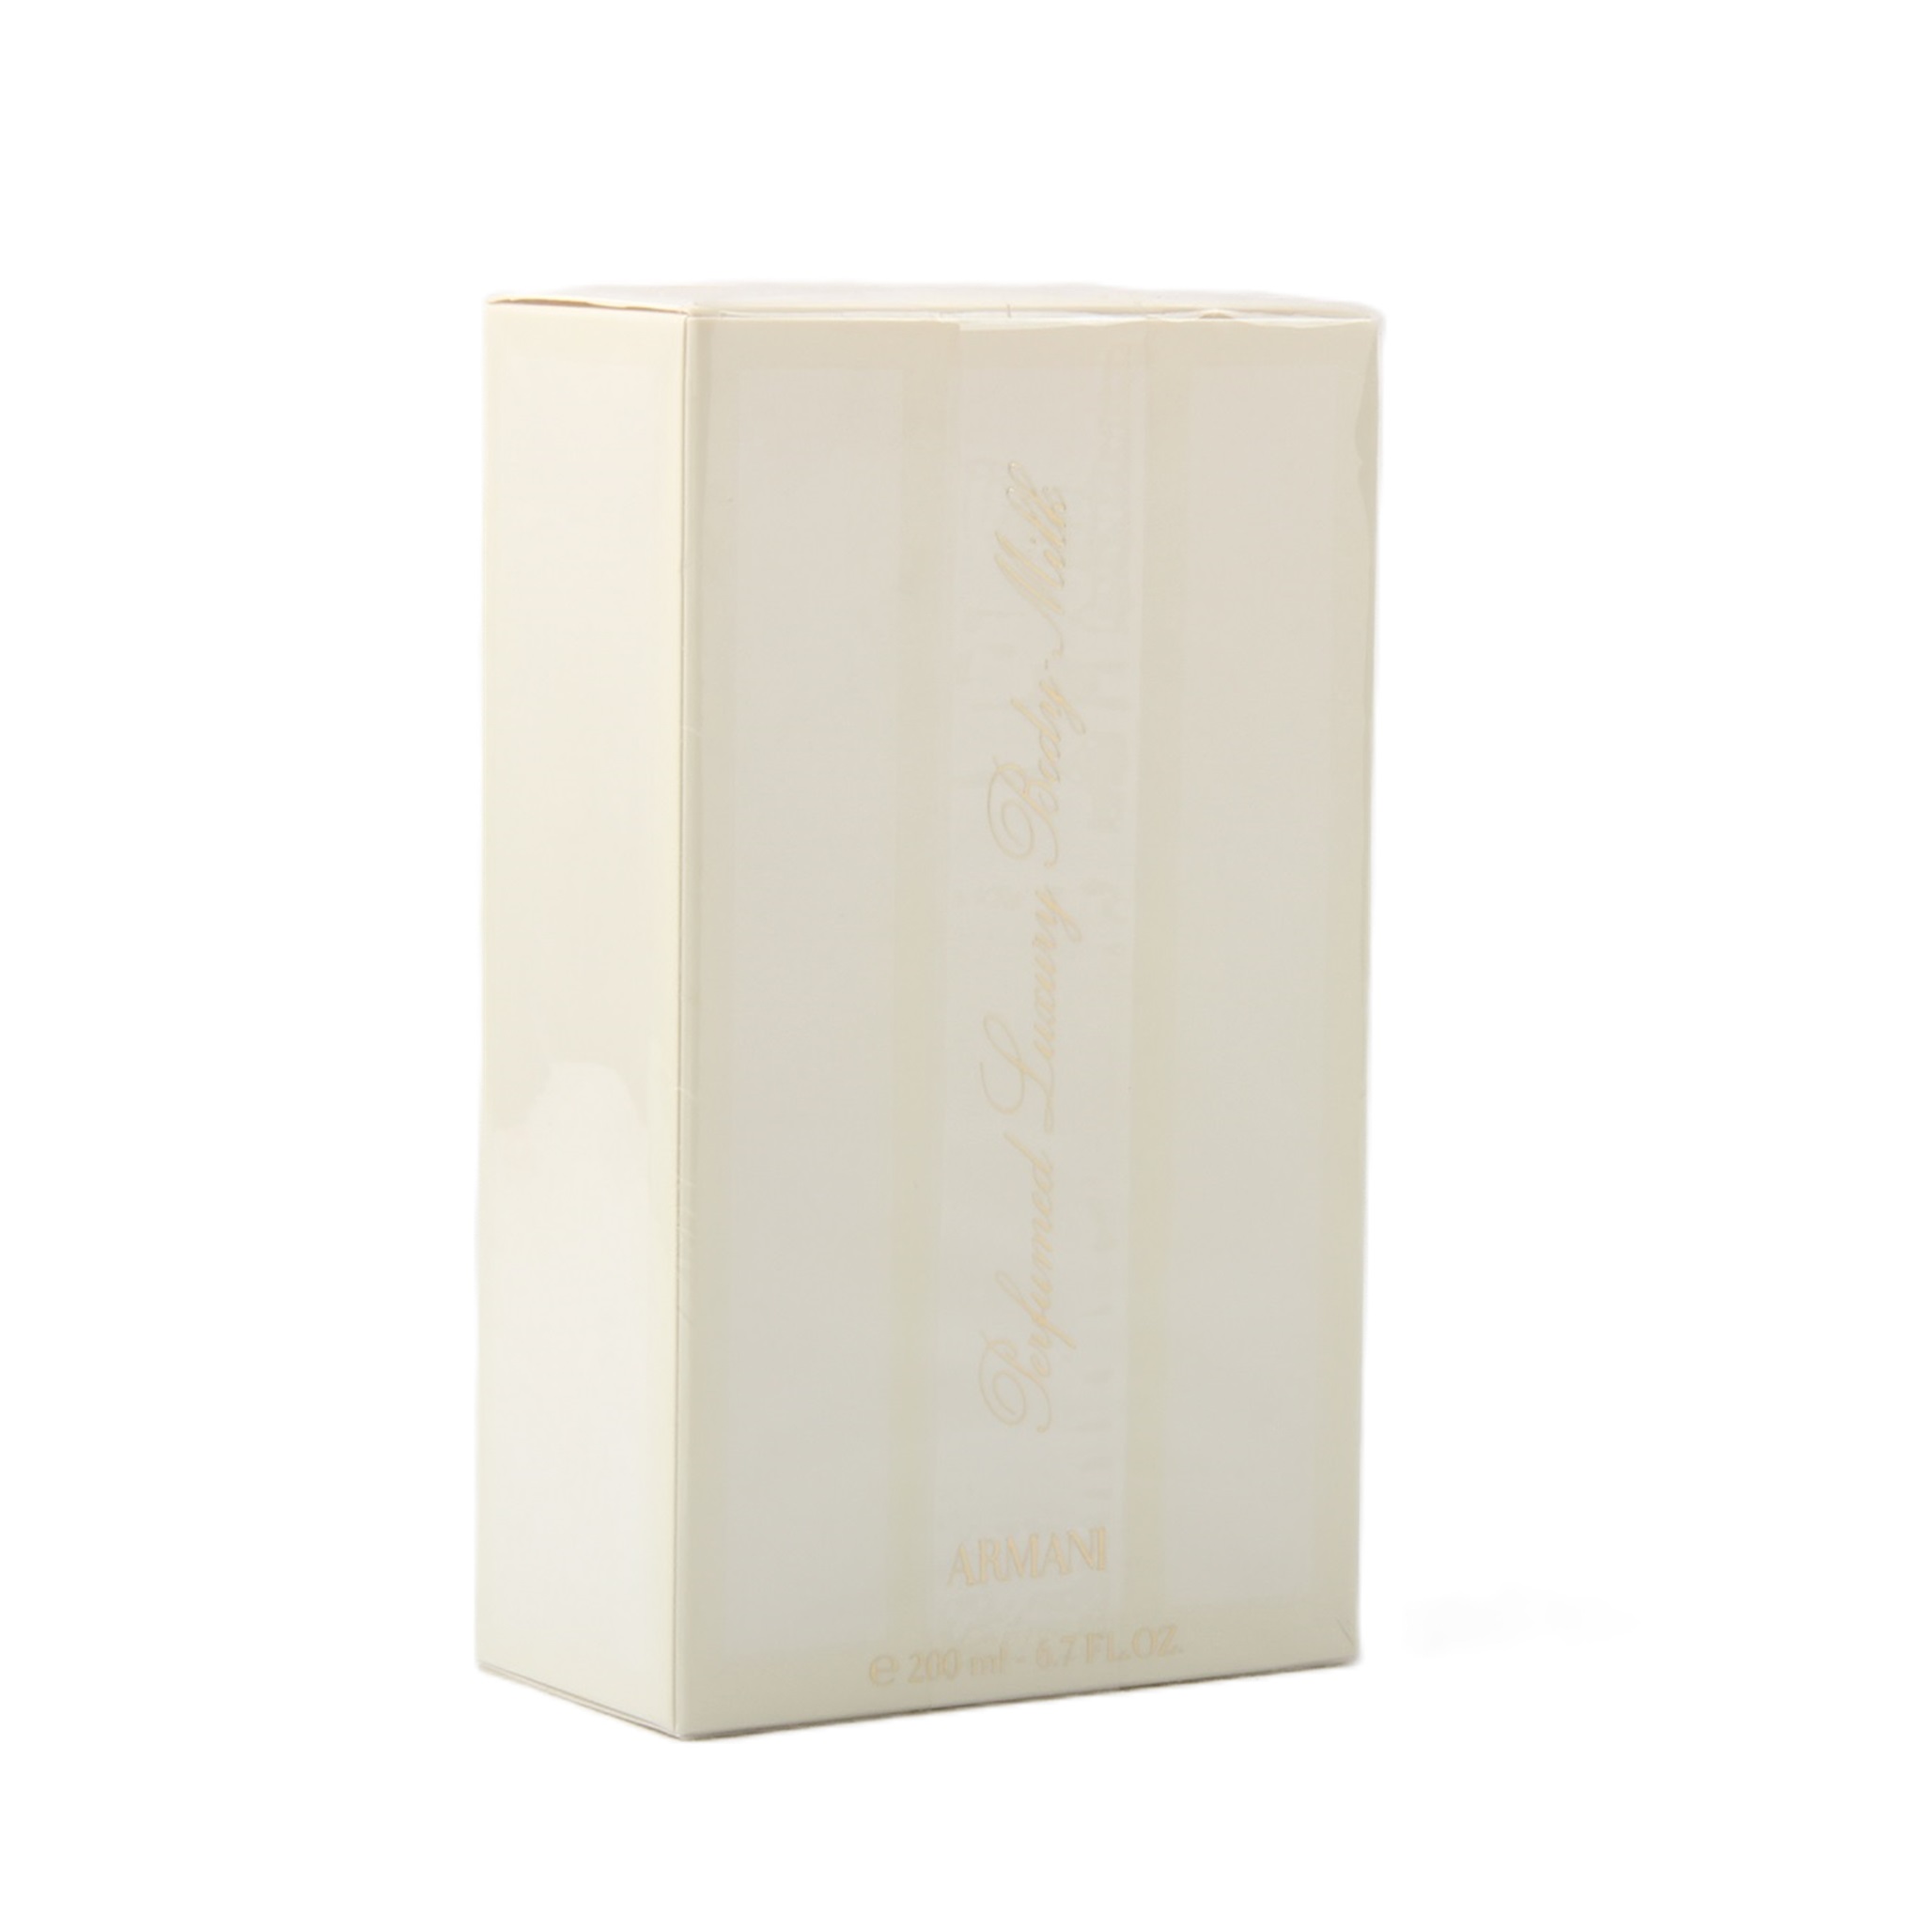 Armani Eau Perfumed Luxury Body Milk / Lotion 200ml